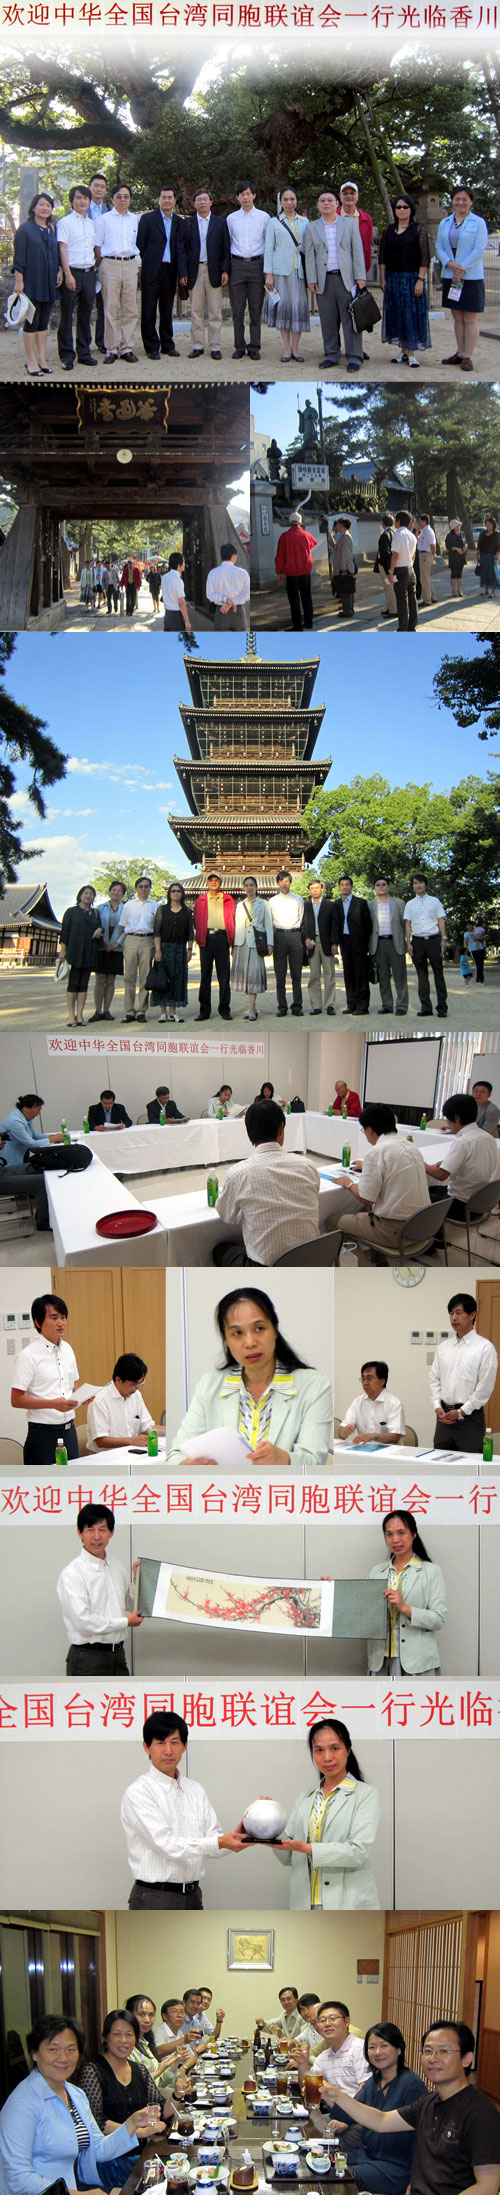 中華全国台湾同胞聯誼会一行当連合会視察訪問の写真